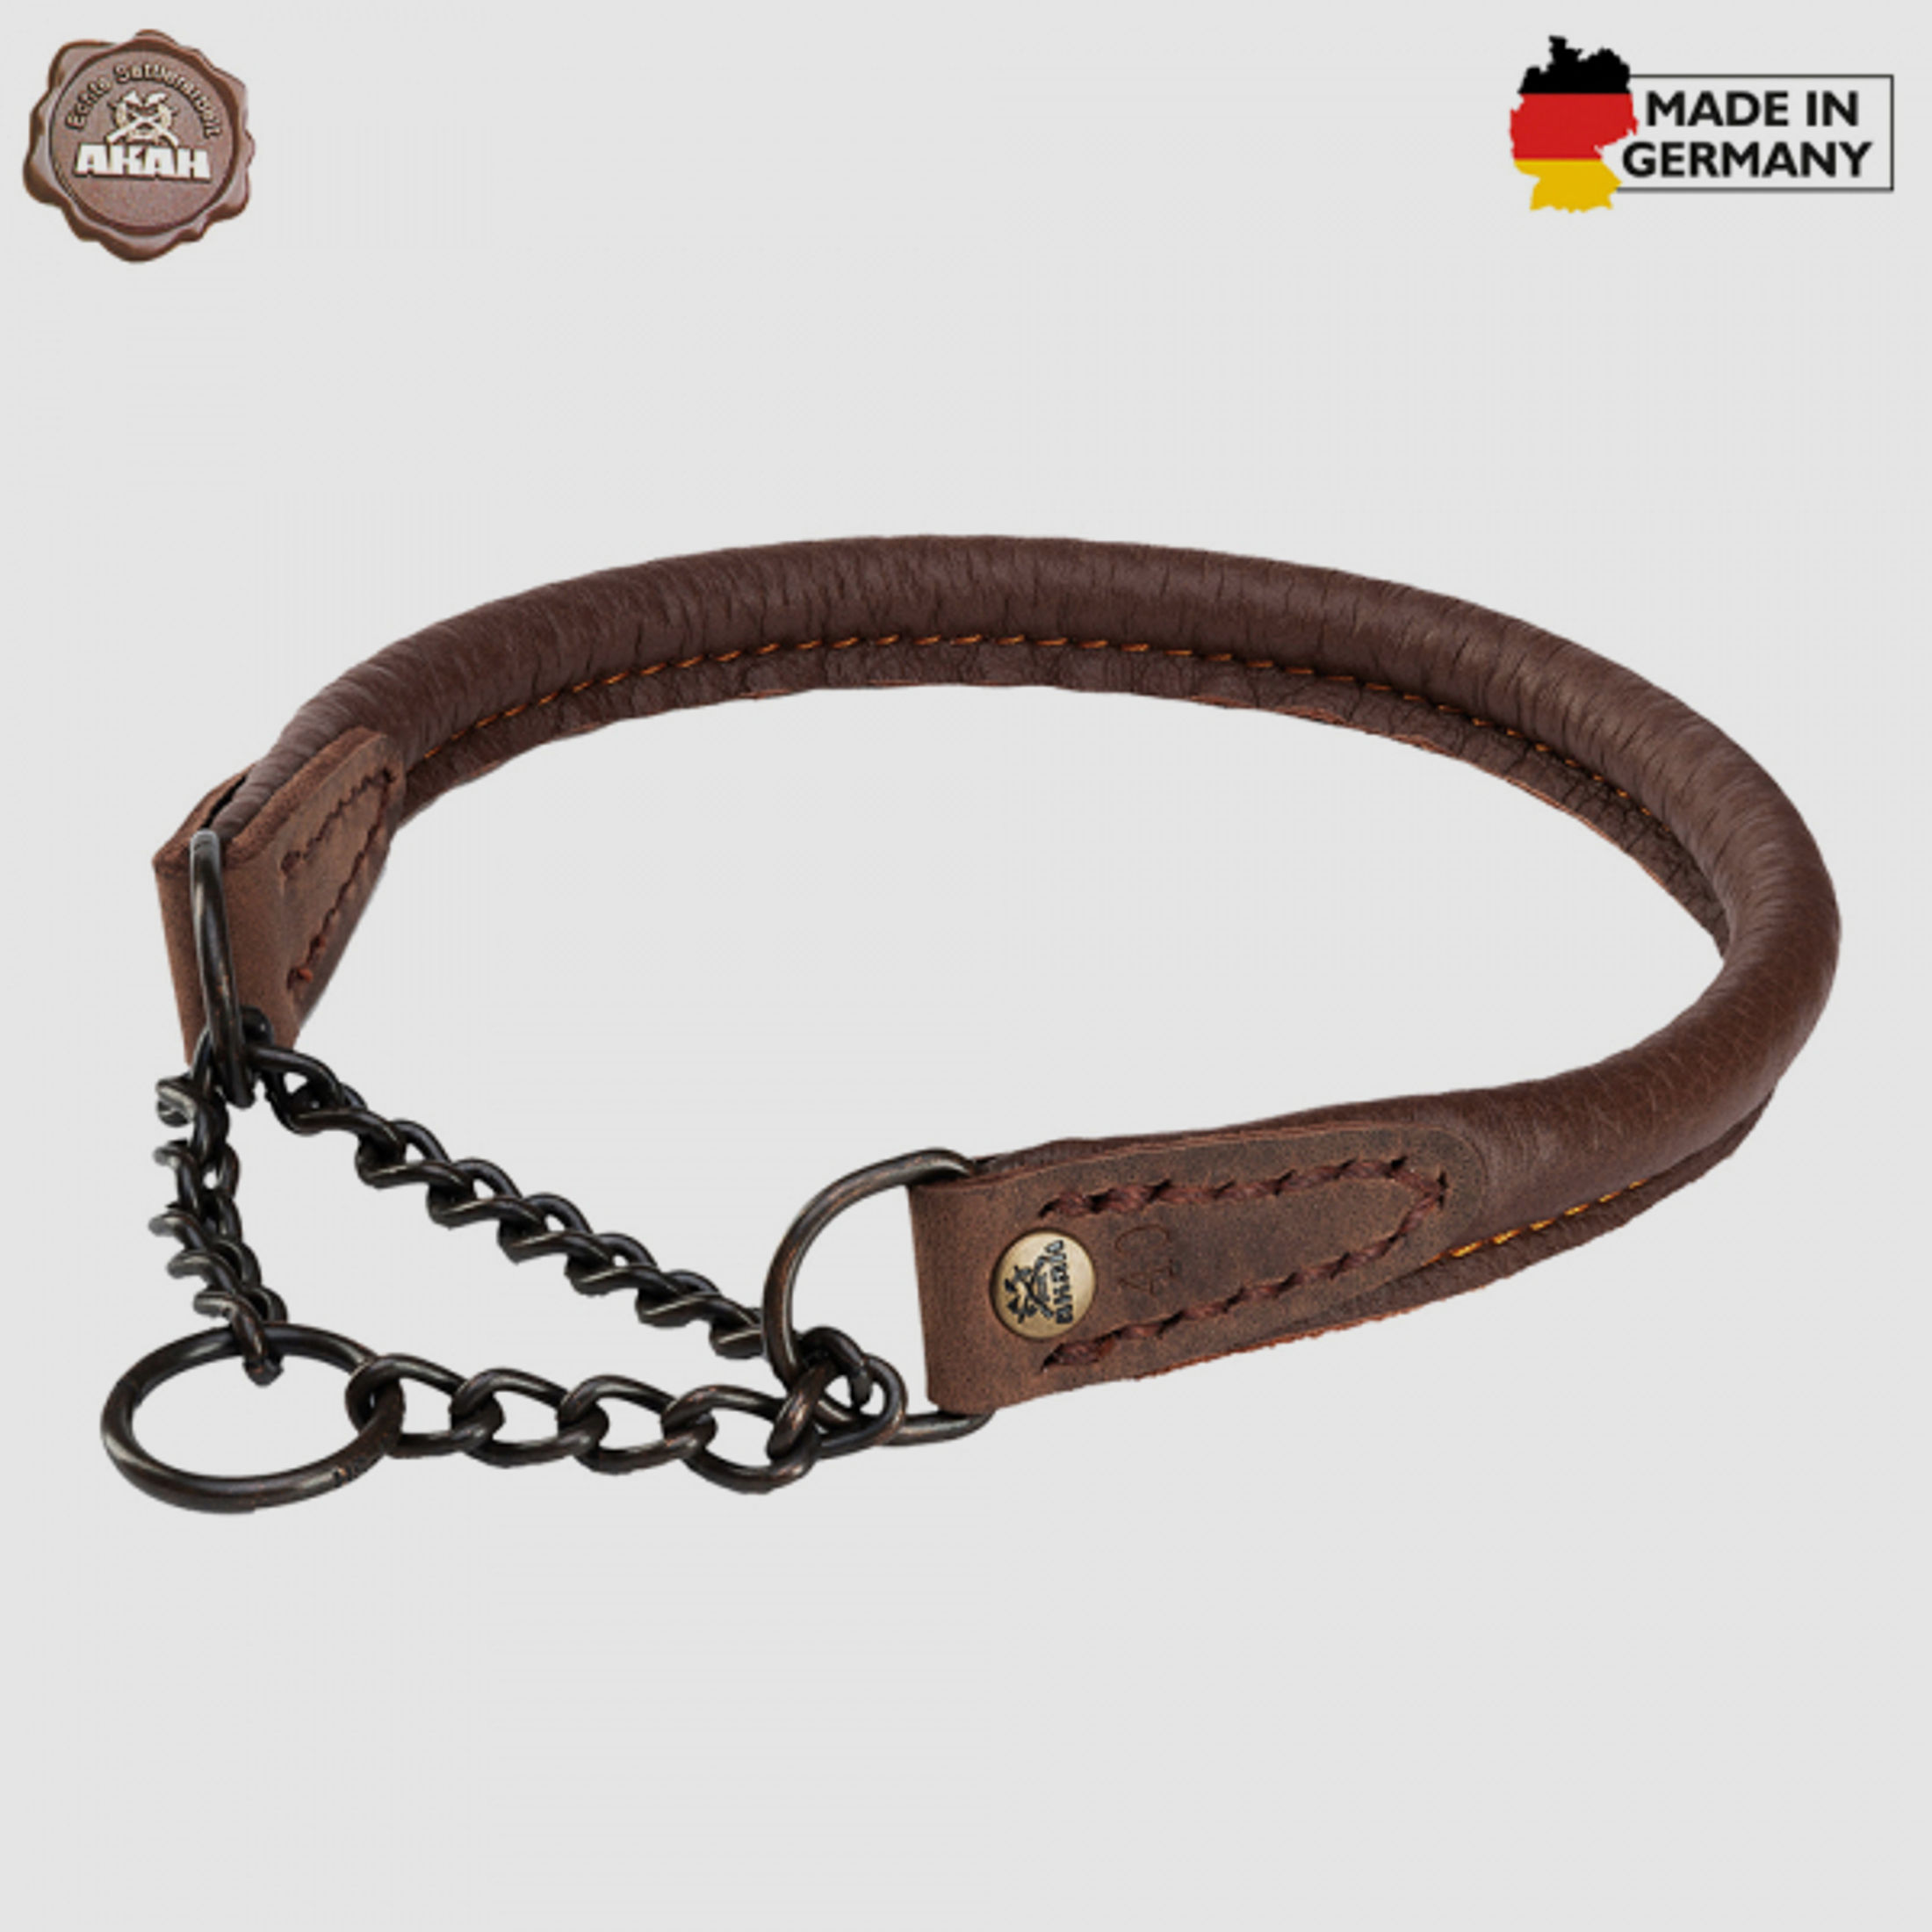 HALSUNG aus ELCHLEDER - rundgenäht, mit Durchzugskette Handgenäht in GERMANY Halsumfang Größe: 35cm